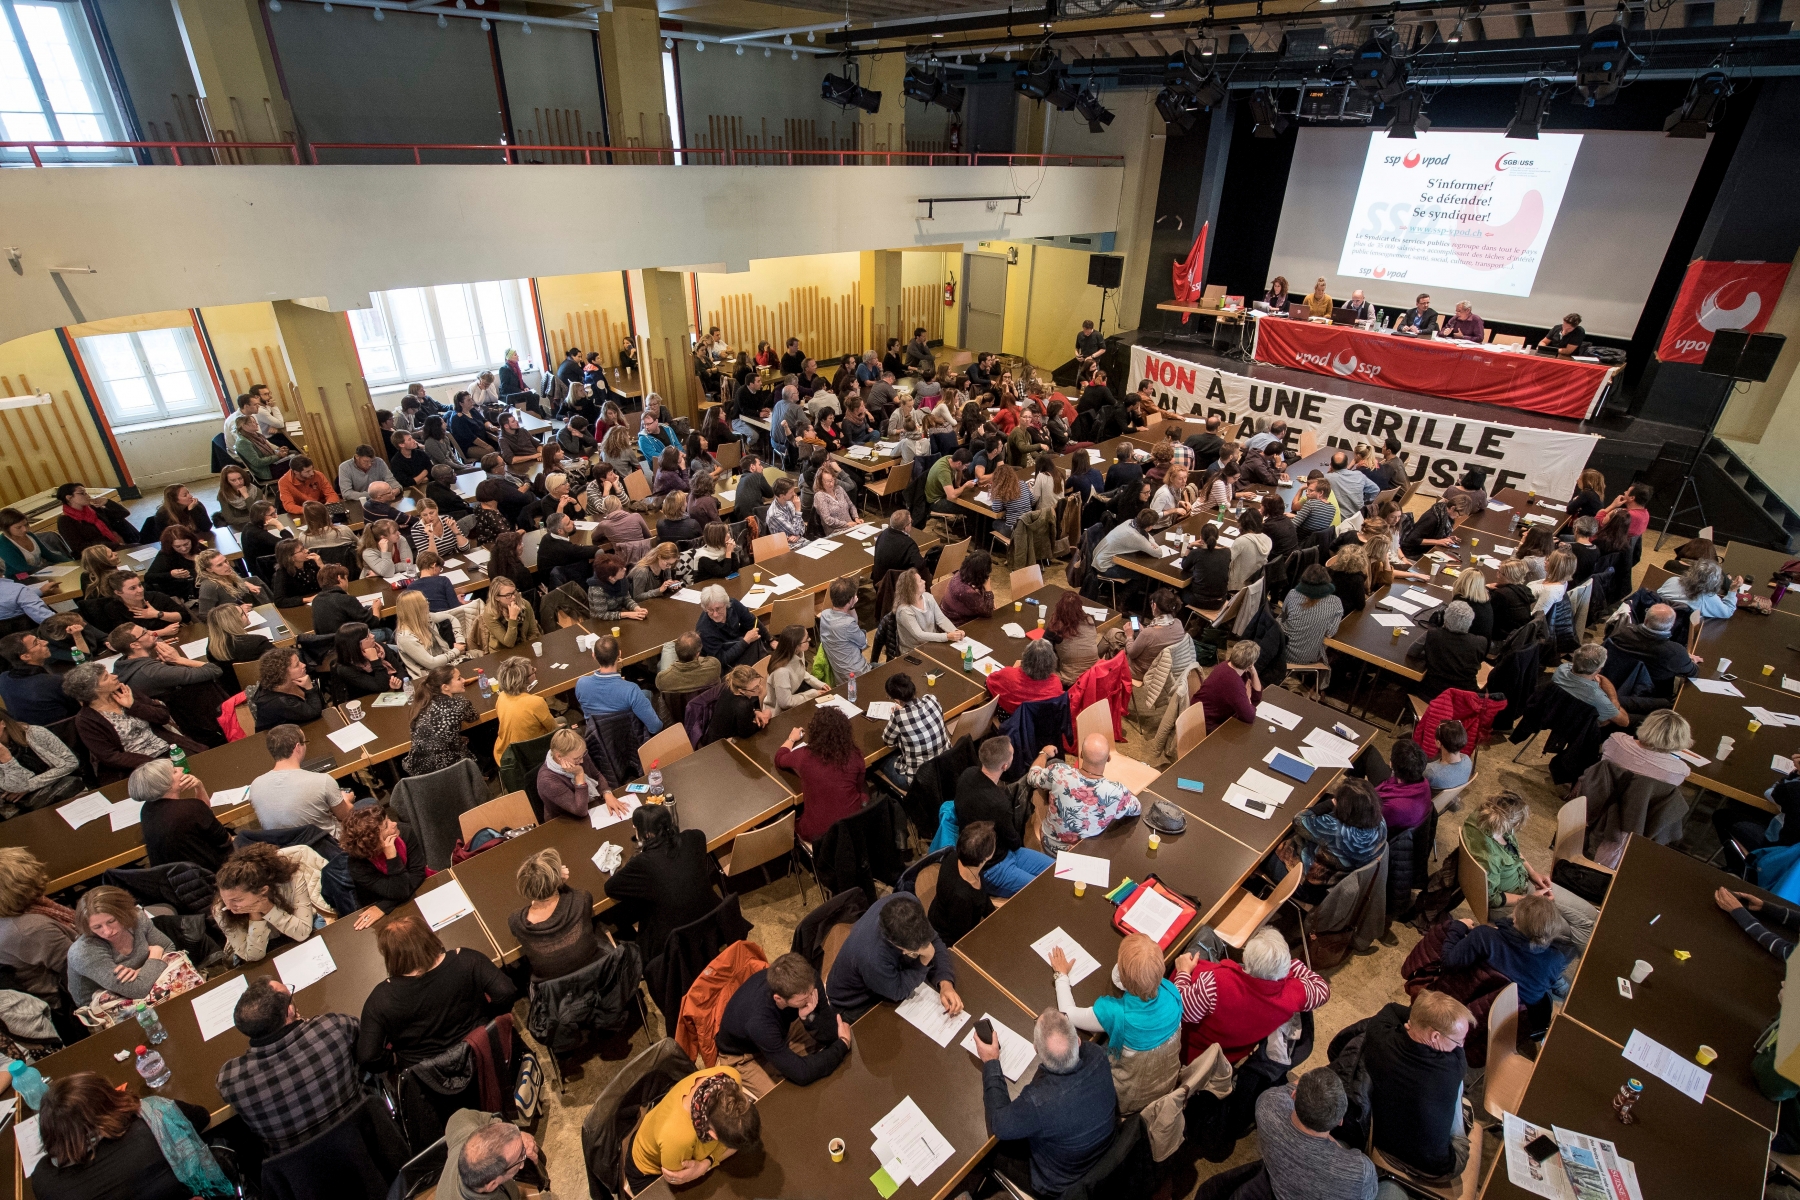 Enseignants. Journee syndicale. Assemblee du syndicat SSP a la Maison du Peuple. 

La Chaux-de-Fonds, le 02.11.2016
Photo : Lucas Vuitel SSP